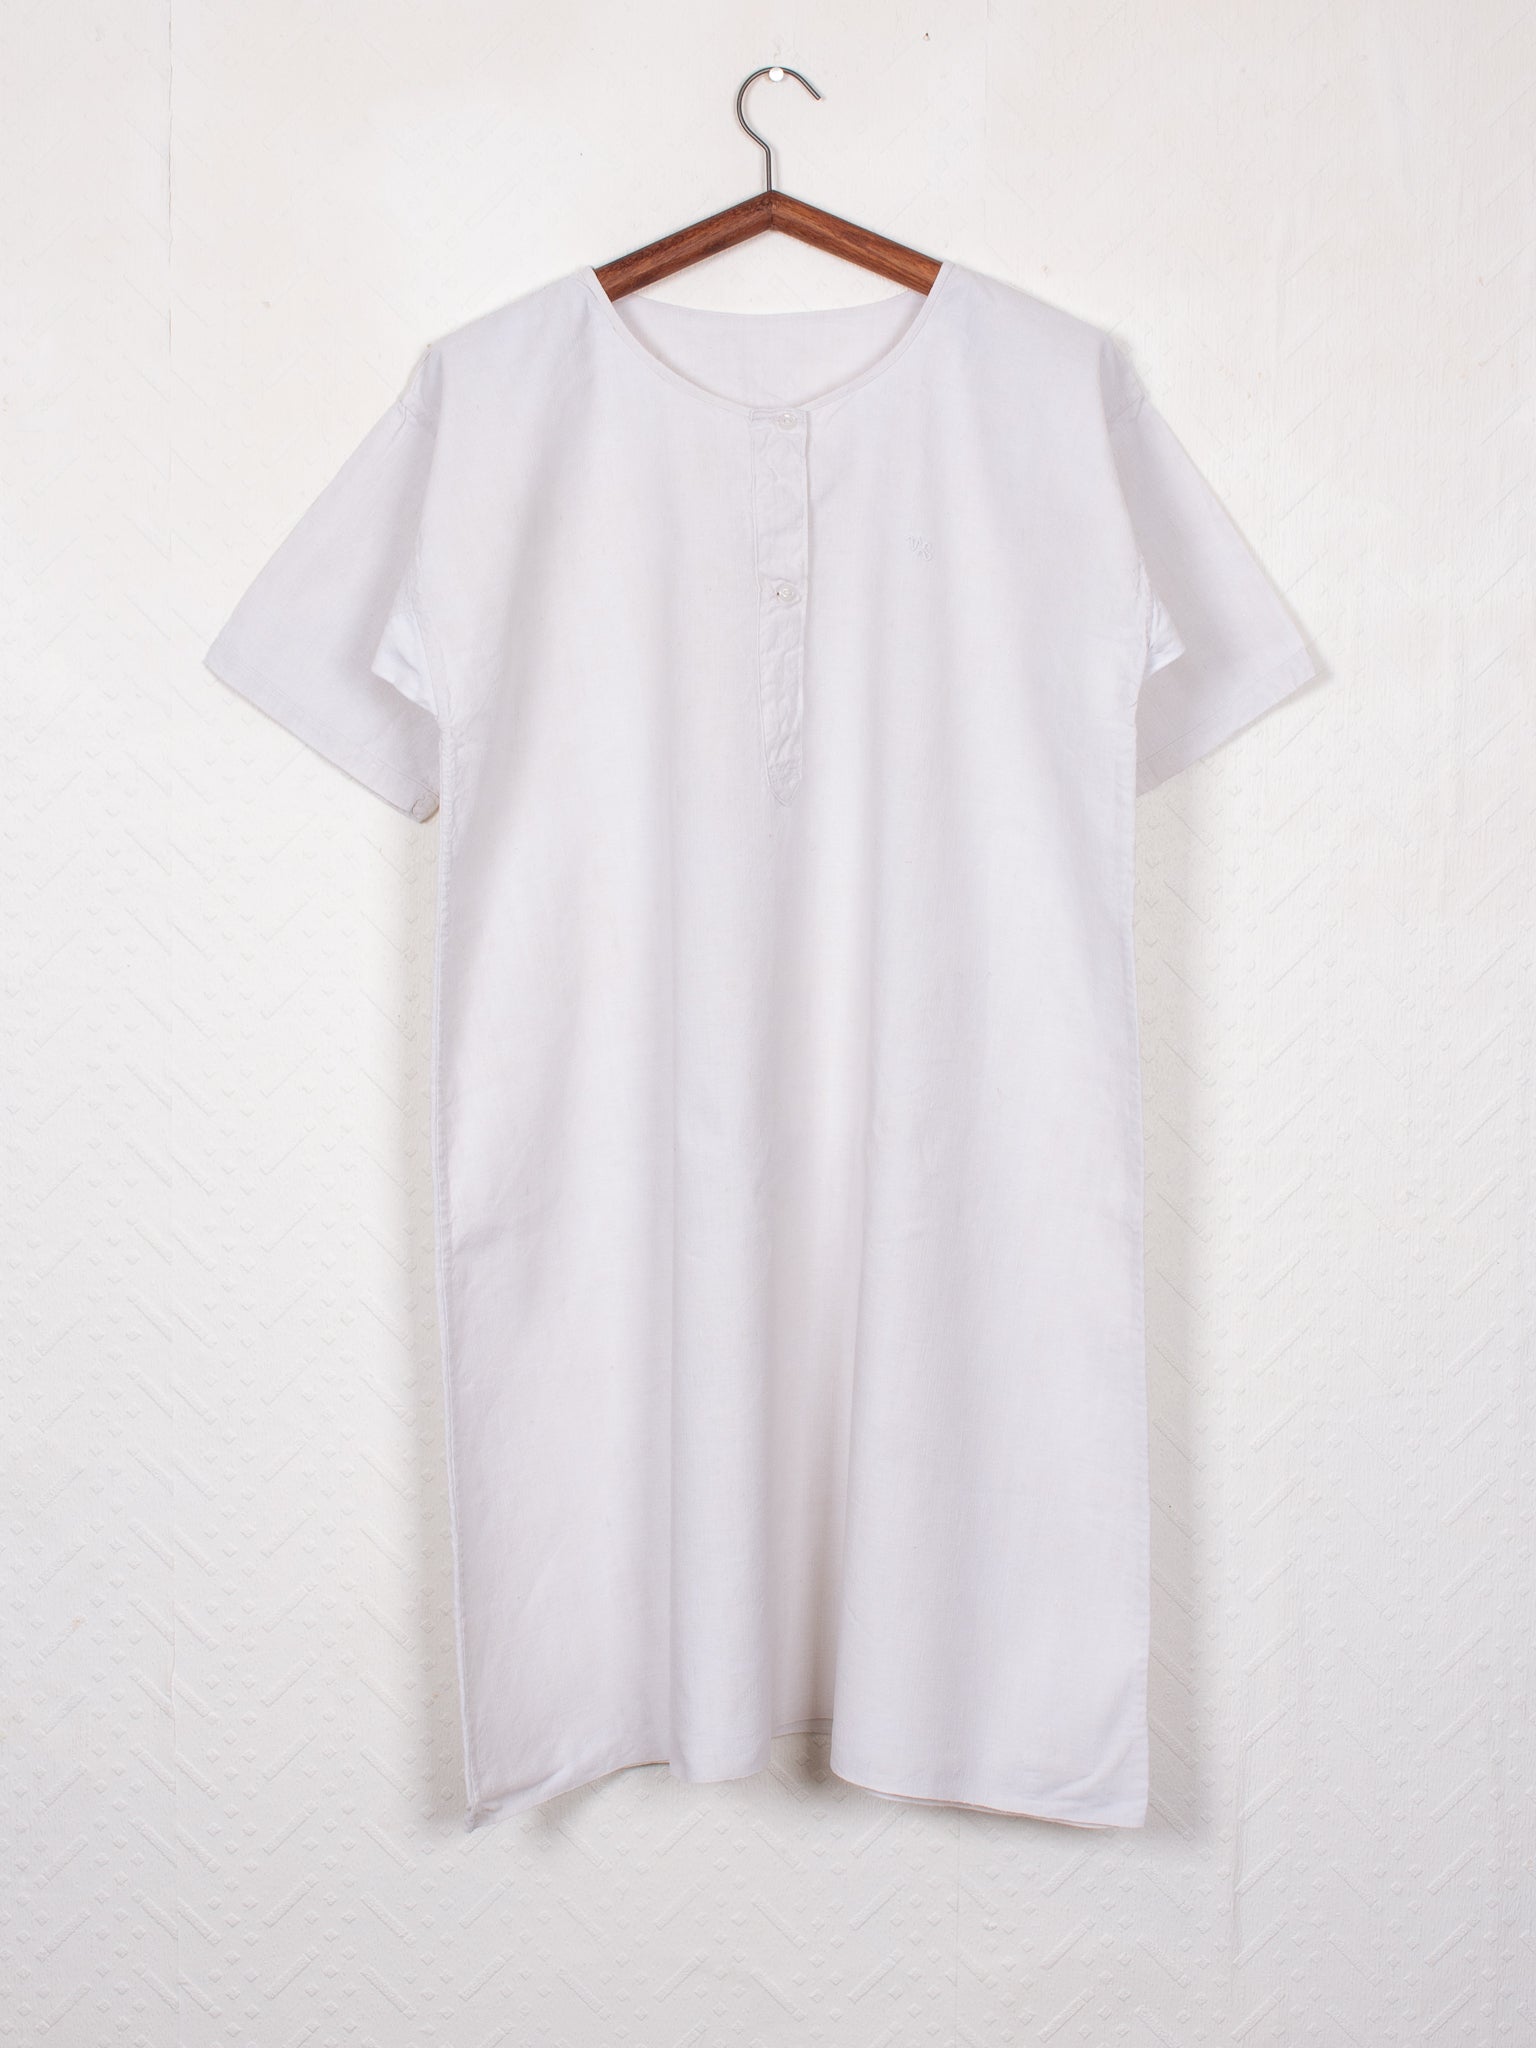 shirts & blouses 30s Night Shirt - XL